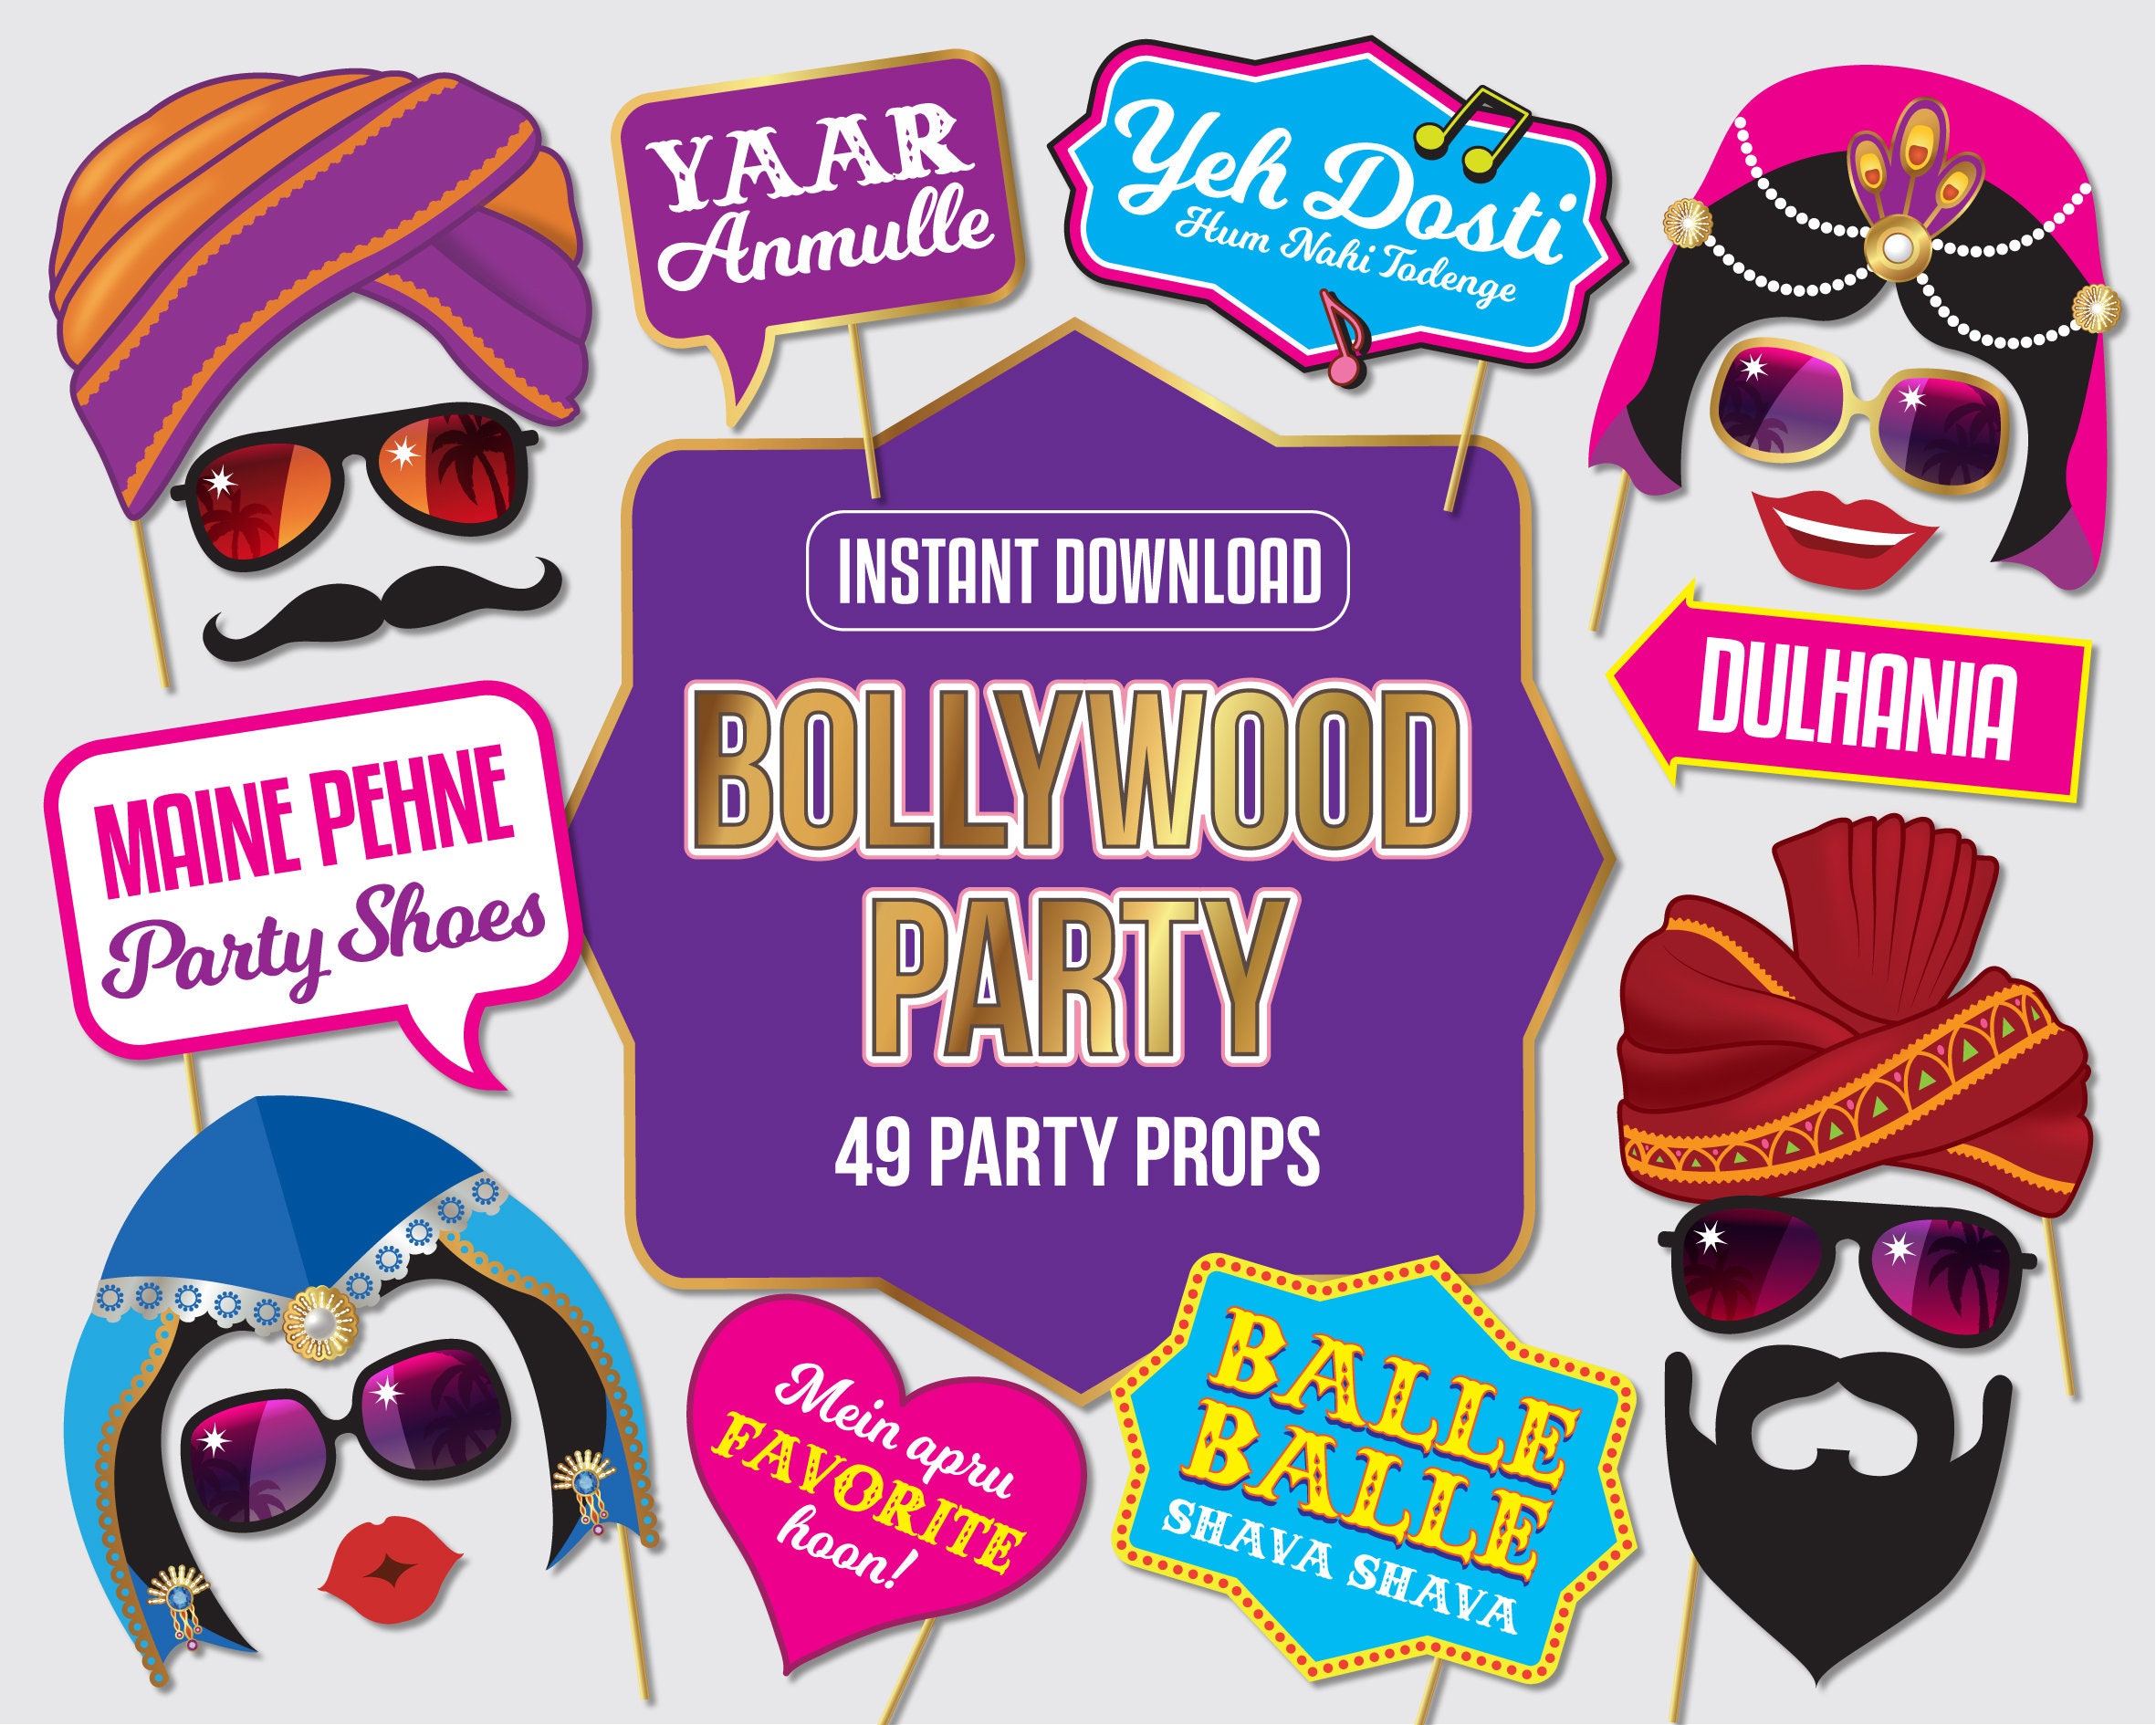 Bollywood Party - Etsy New Zealand